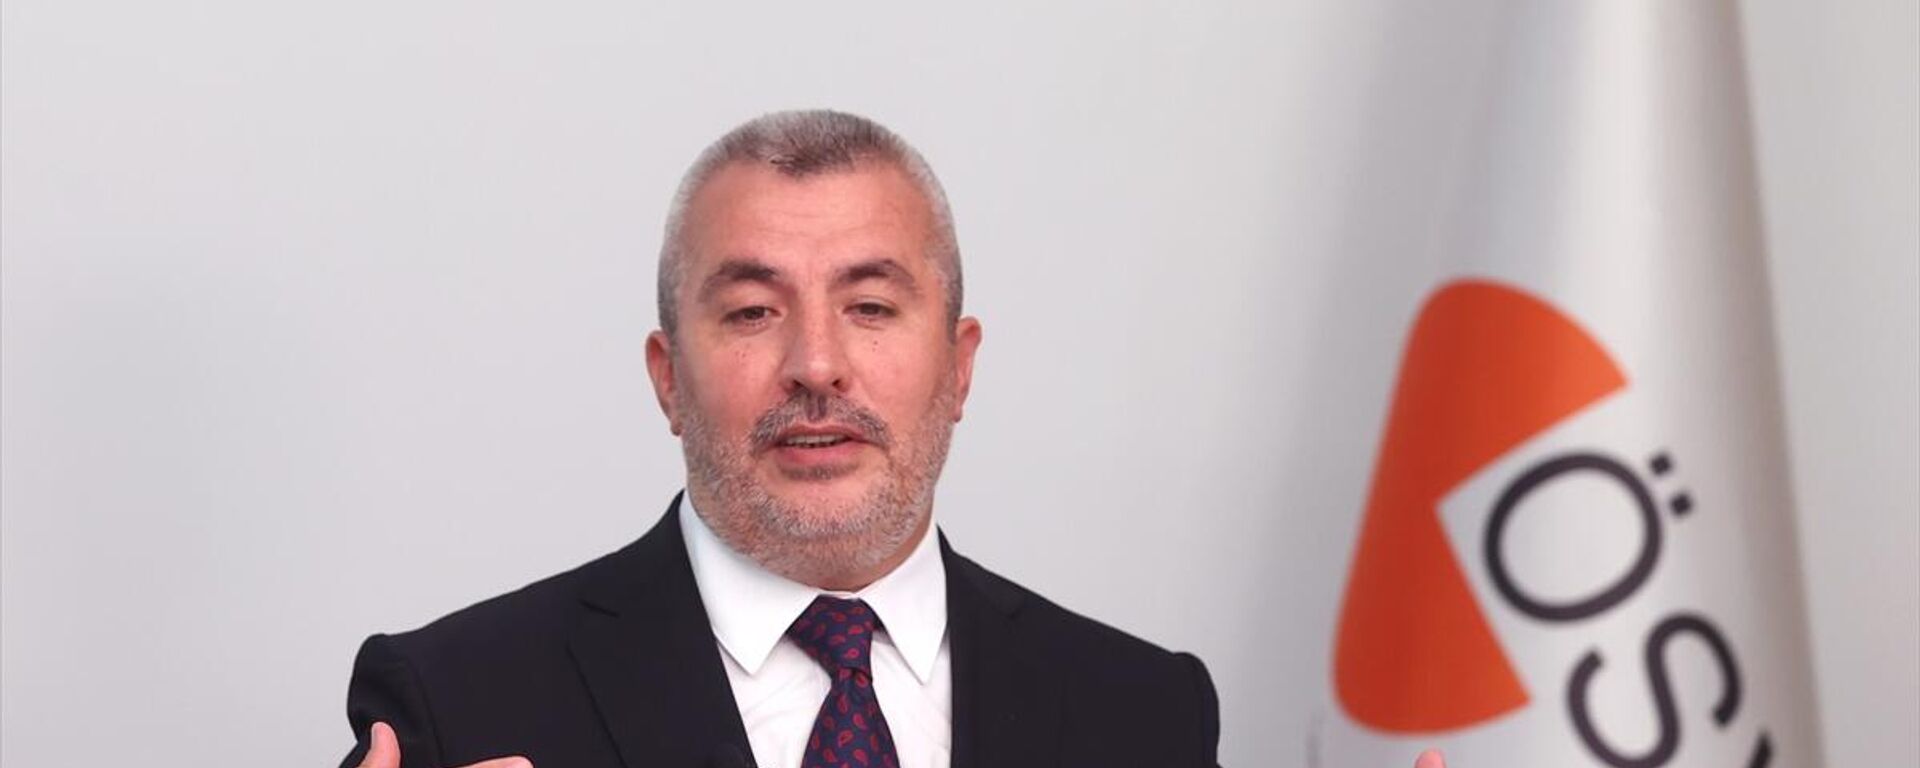 Ölçme, Seçme ve Yerleştirme Merkezi (ÖSYM) Başkanlığına Prof. Dr. Bayram Ali Ersoy, 31 Temmuz'da yapılan KPSS oturumlarının iptal edildiğini açıkladı. - Sputnik Türkiye, 1920, 04.08.2022